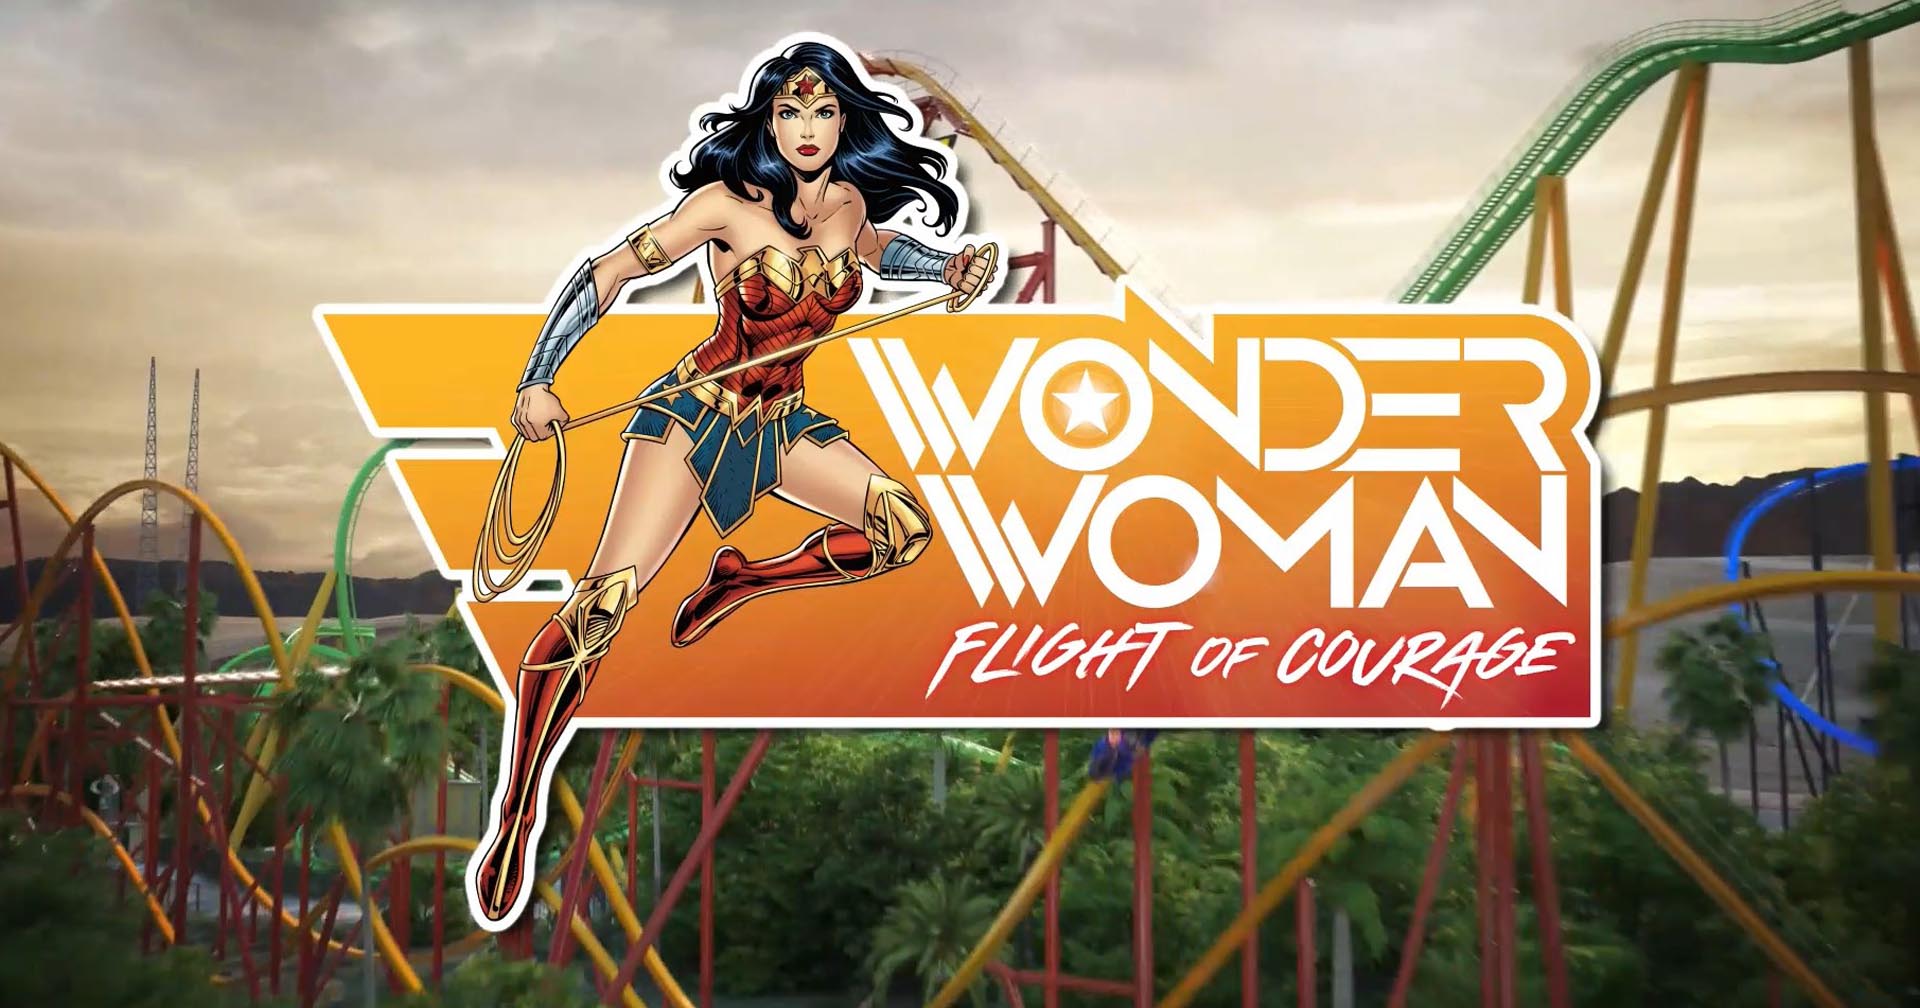 สวนสนุก Six Flags Magic Mountain ทำลายสถิติโลกหลังเปิดตัวรถไฟเหาะใหม่ล่าสุดธีม Wonder Woman